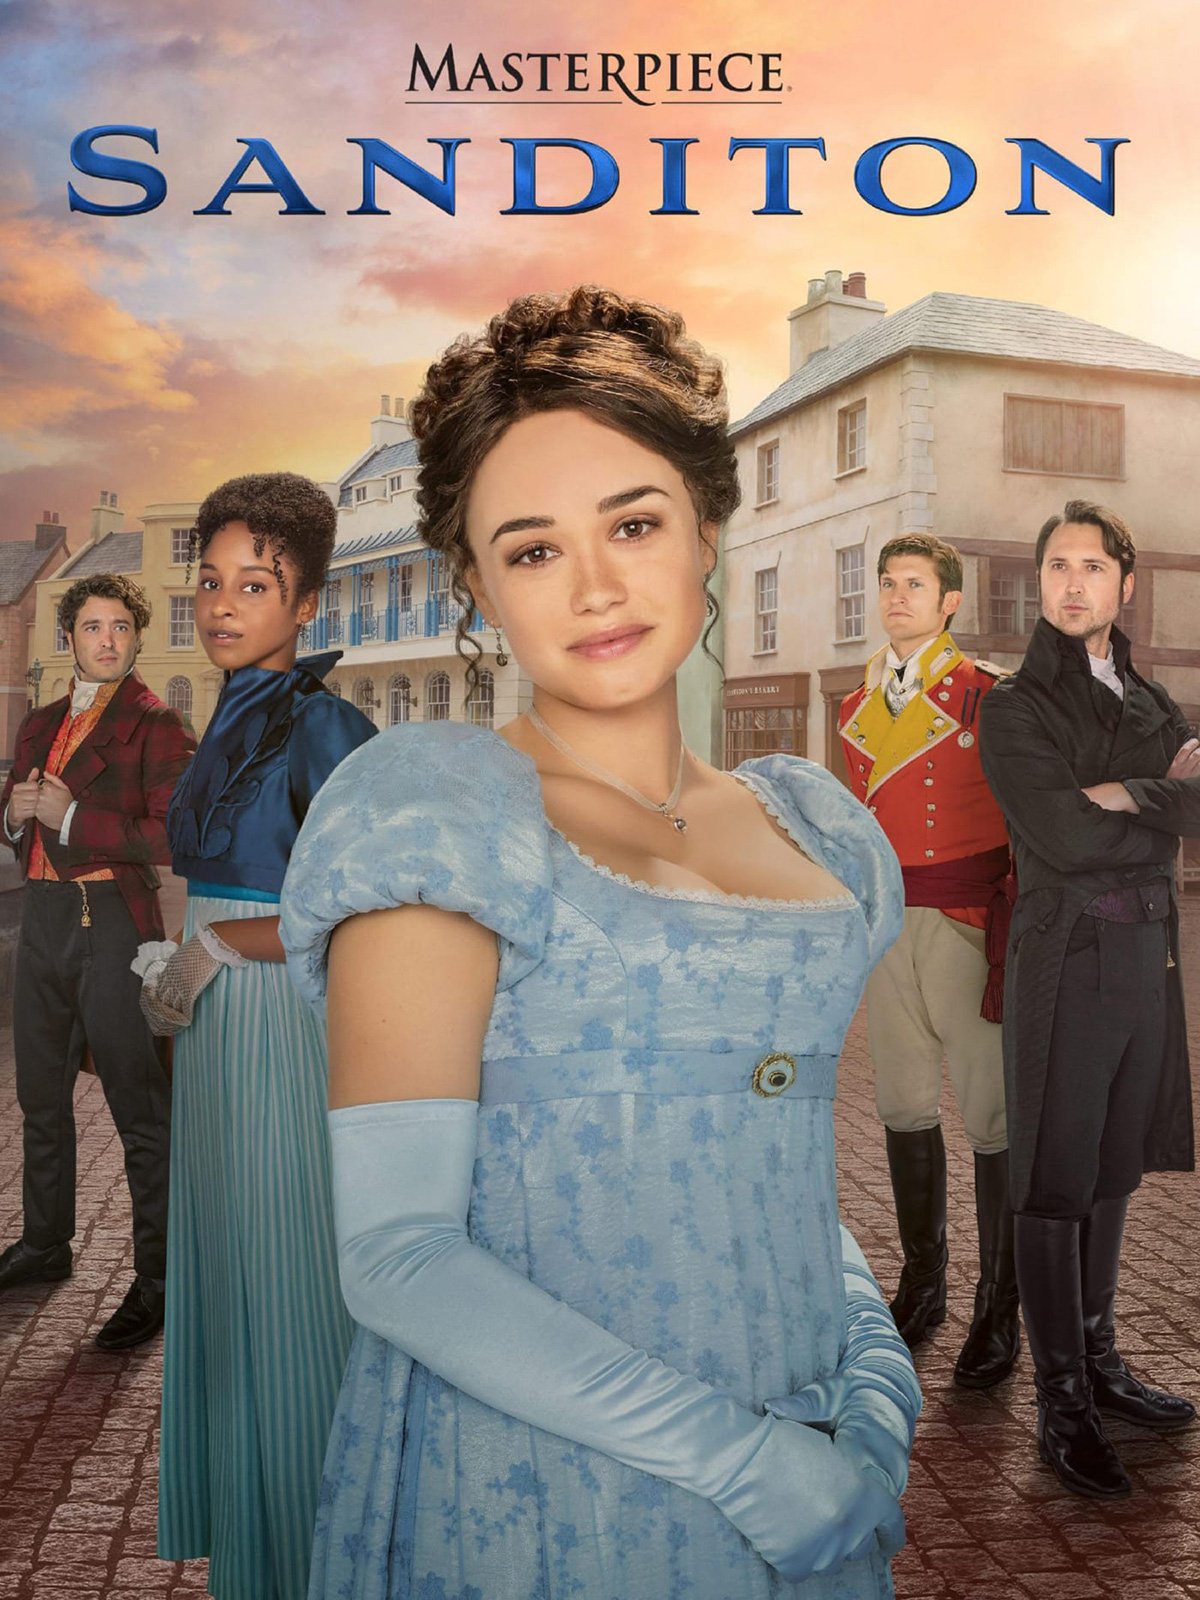 Jane Austen : Bienvenue à Sanditon - Saison 2